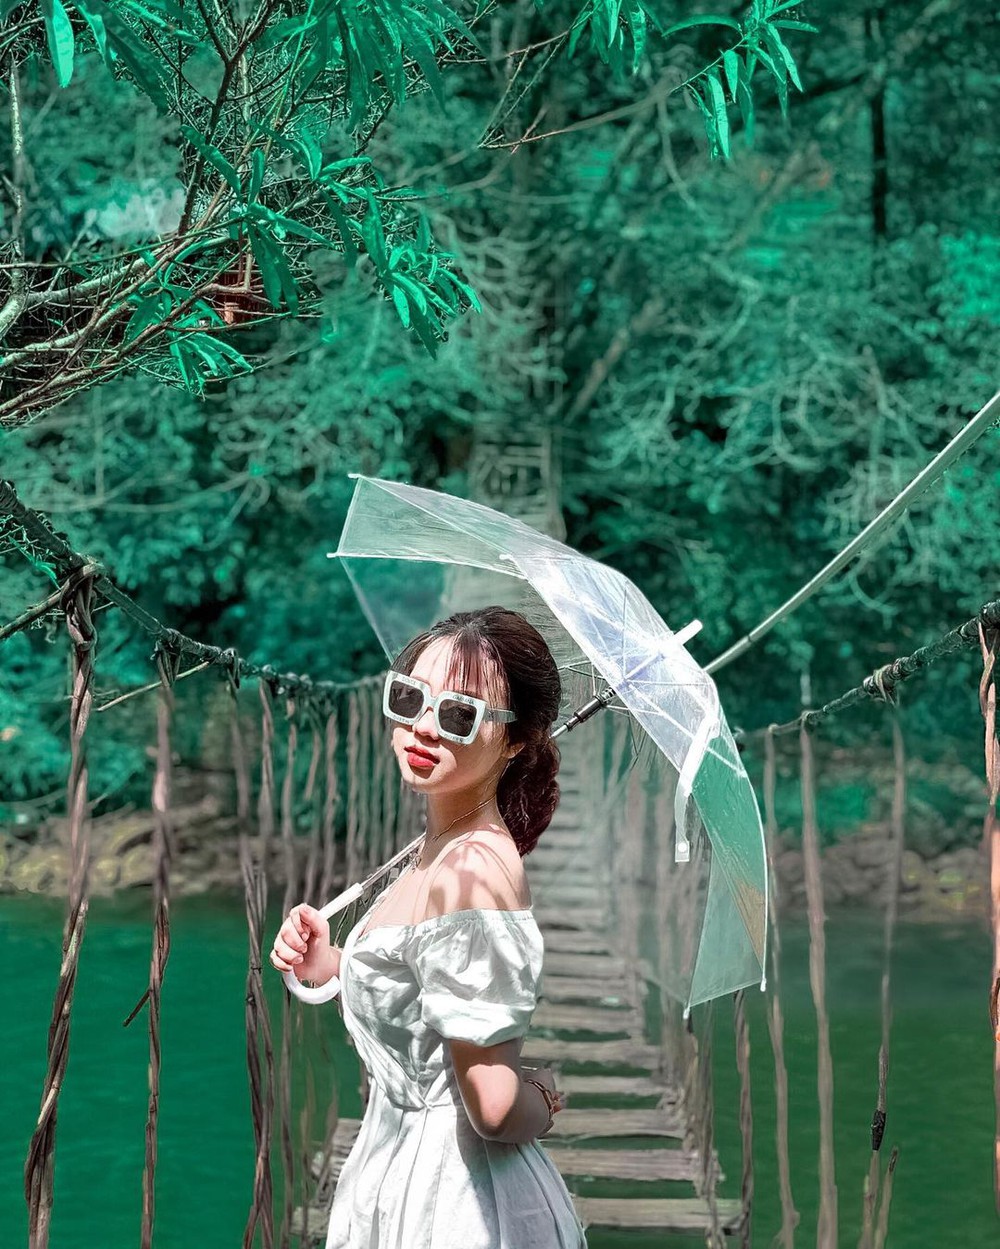 4 cây cầu treo siêu đẹp ở Việt Nam: Cứ đến là “lụm ảnh mỏi tay” nhưng lại không dành cho người yếu tim - Ảnh 19.